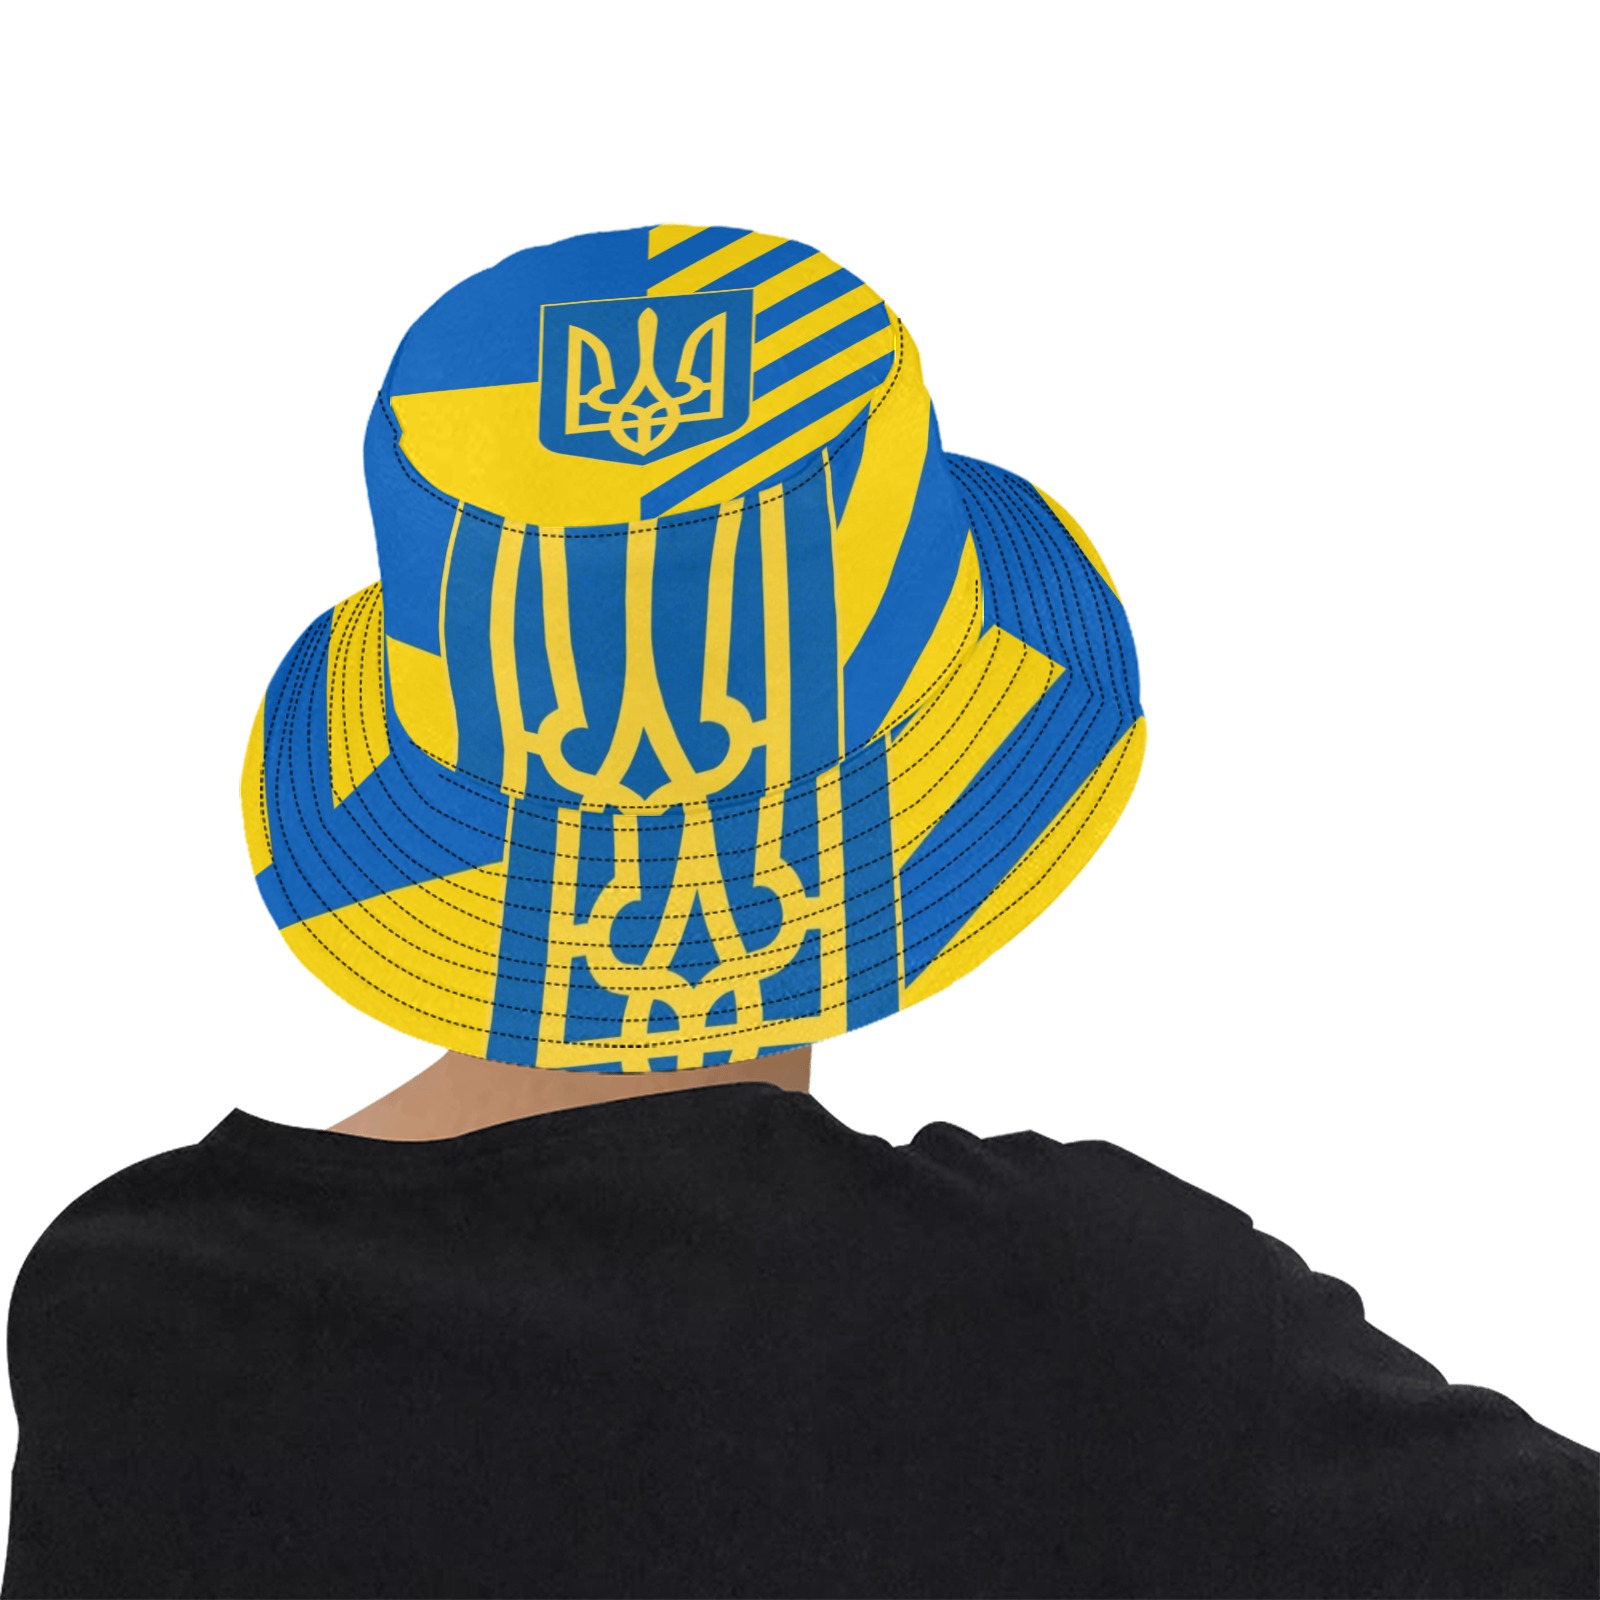 UKRAINE Unisex Summer Bucket Hat